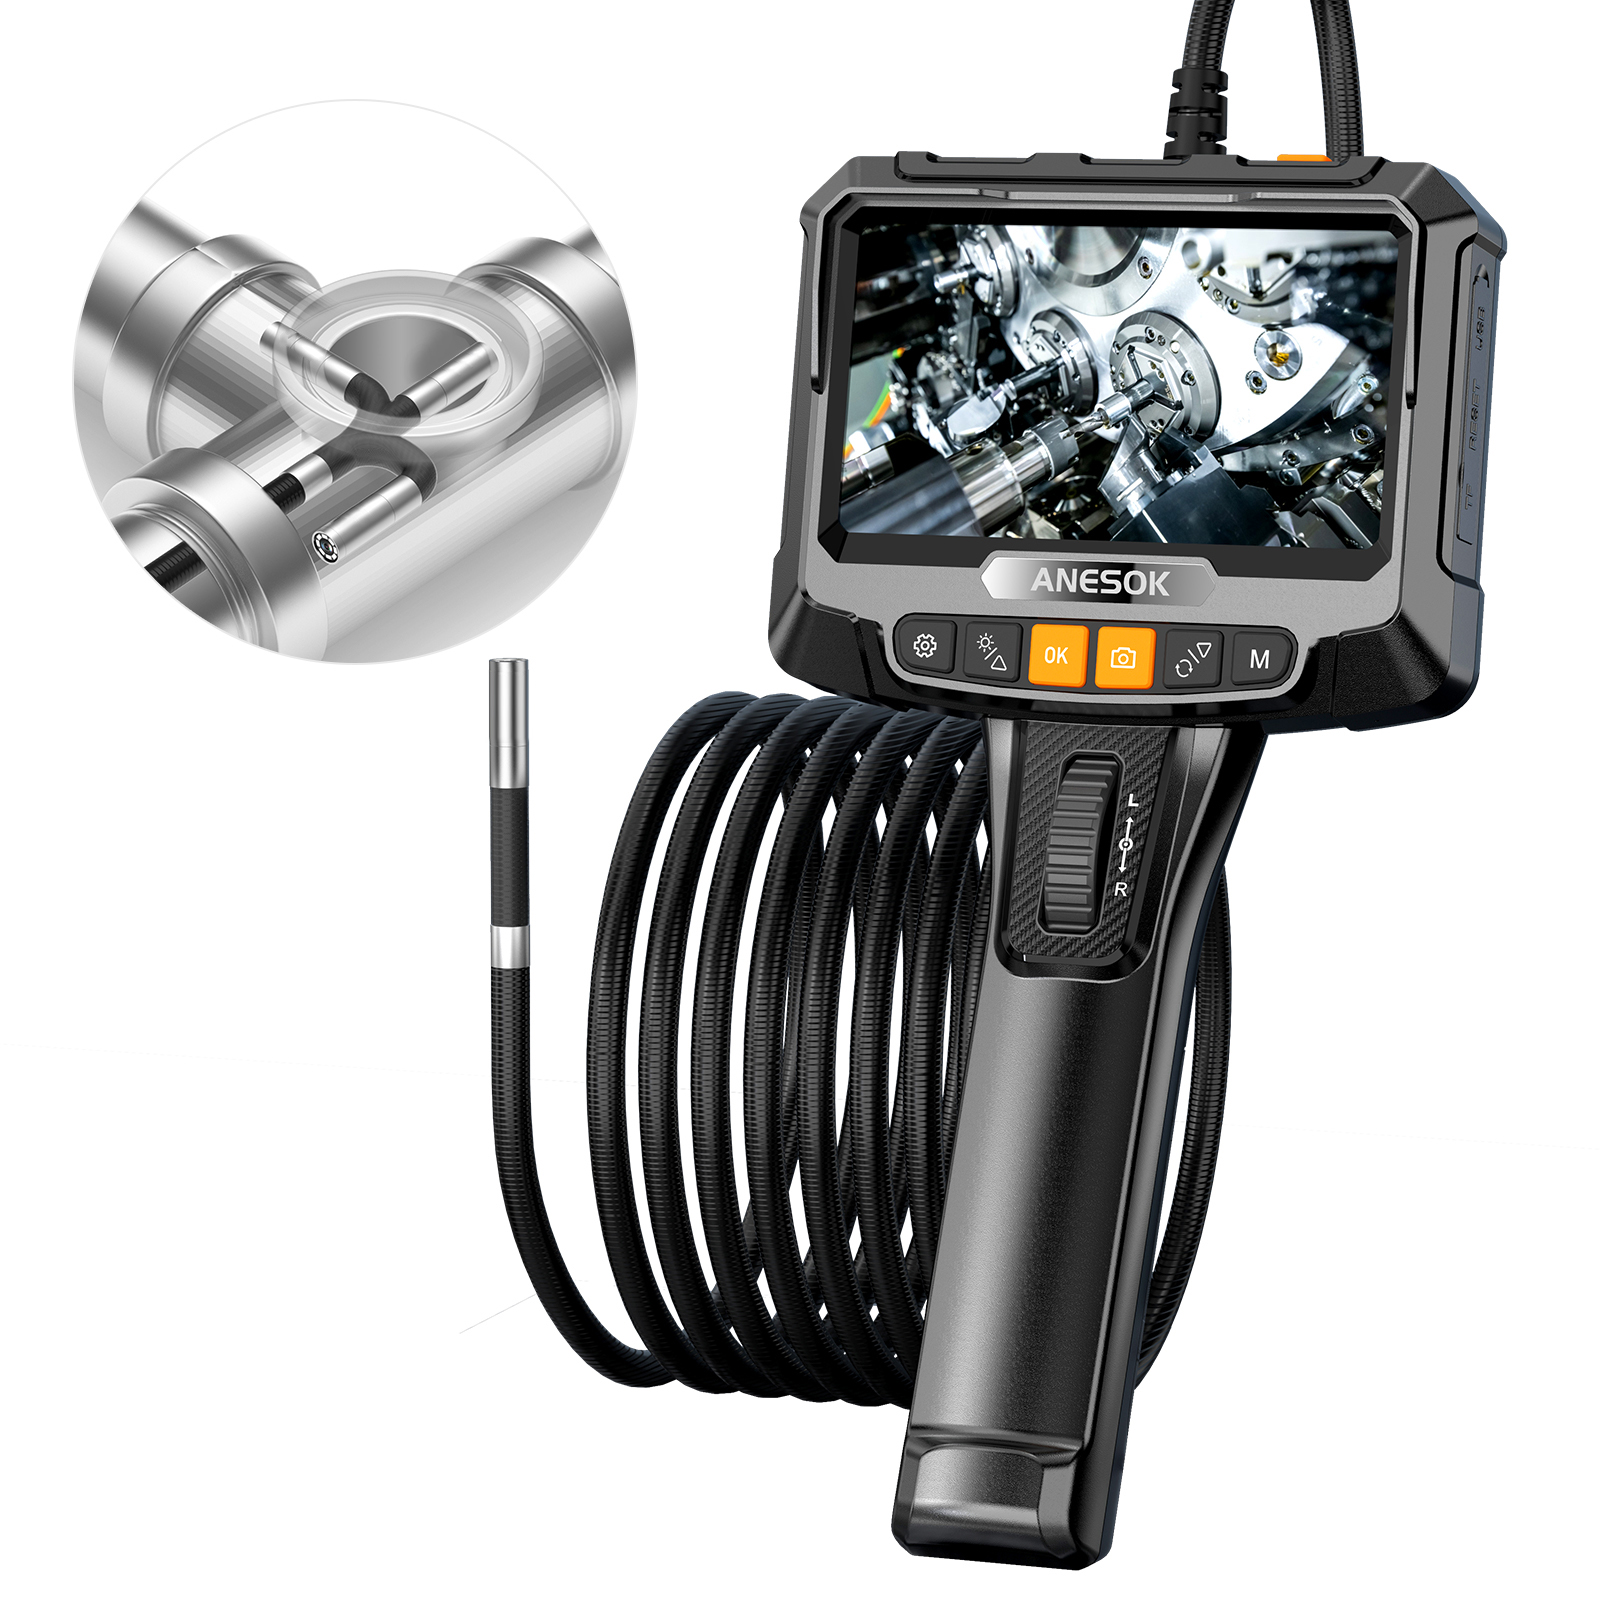 Y101 8mm Spiral Head 3 In 1 Waterproof Digital Endoscope